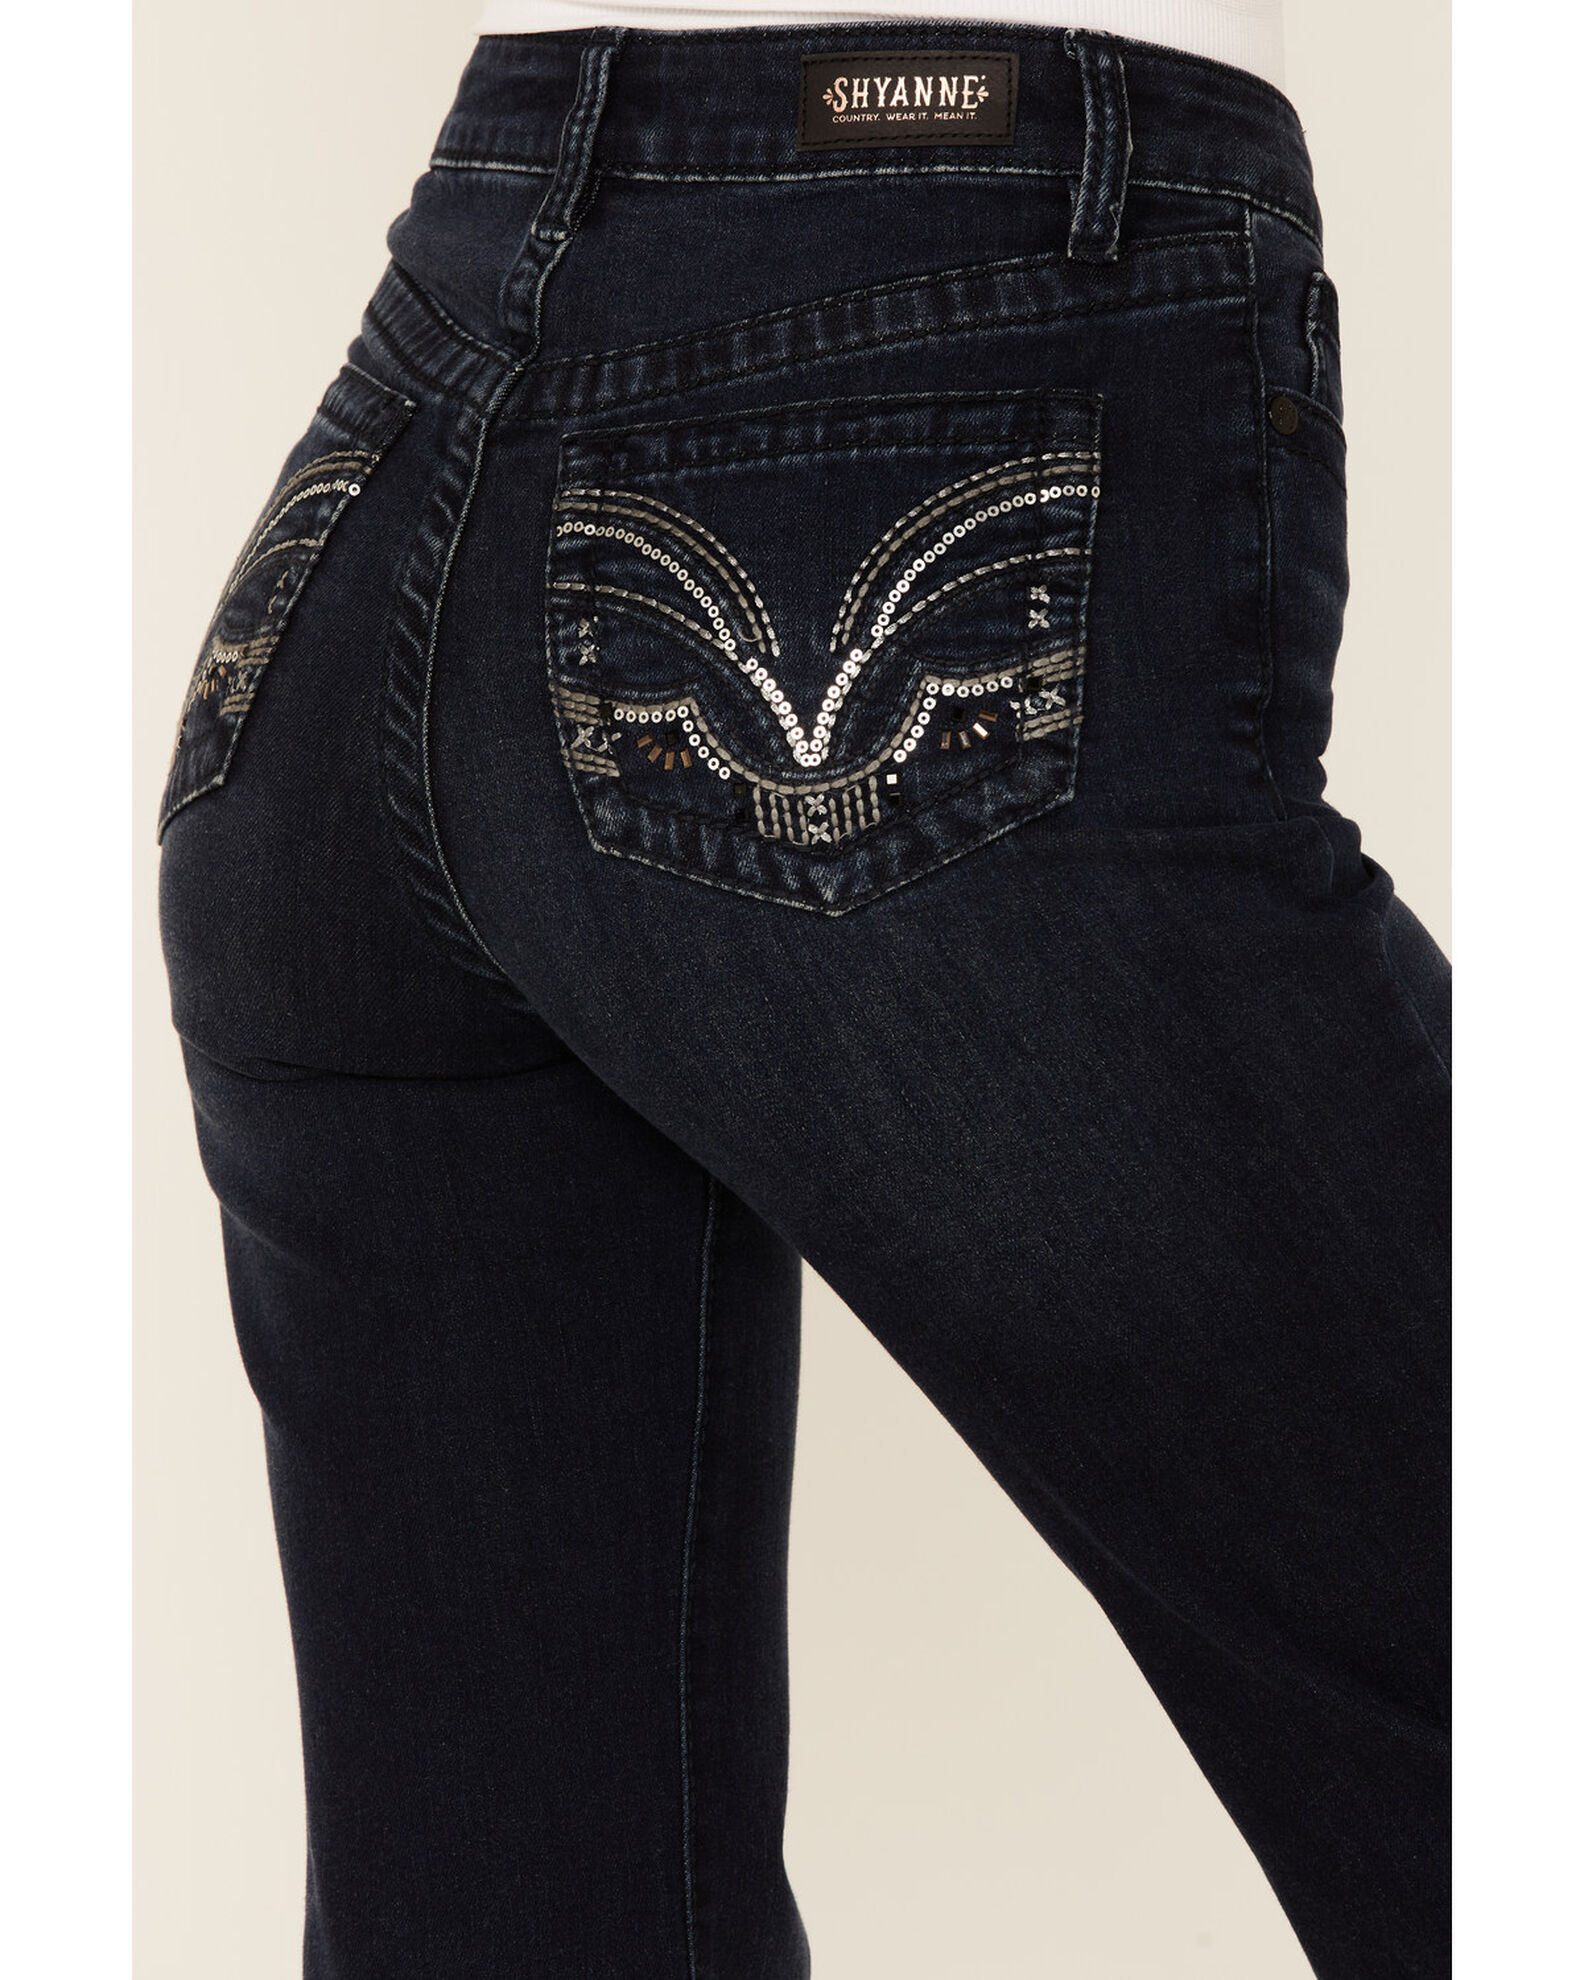 Shyanne Women's Chandelier Pocket High Rise Flare Jeans